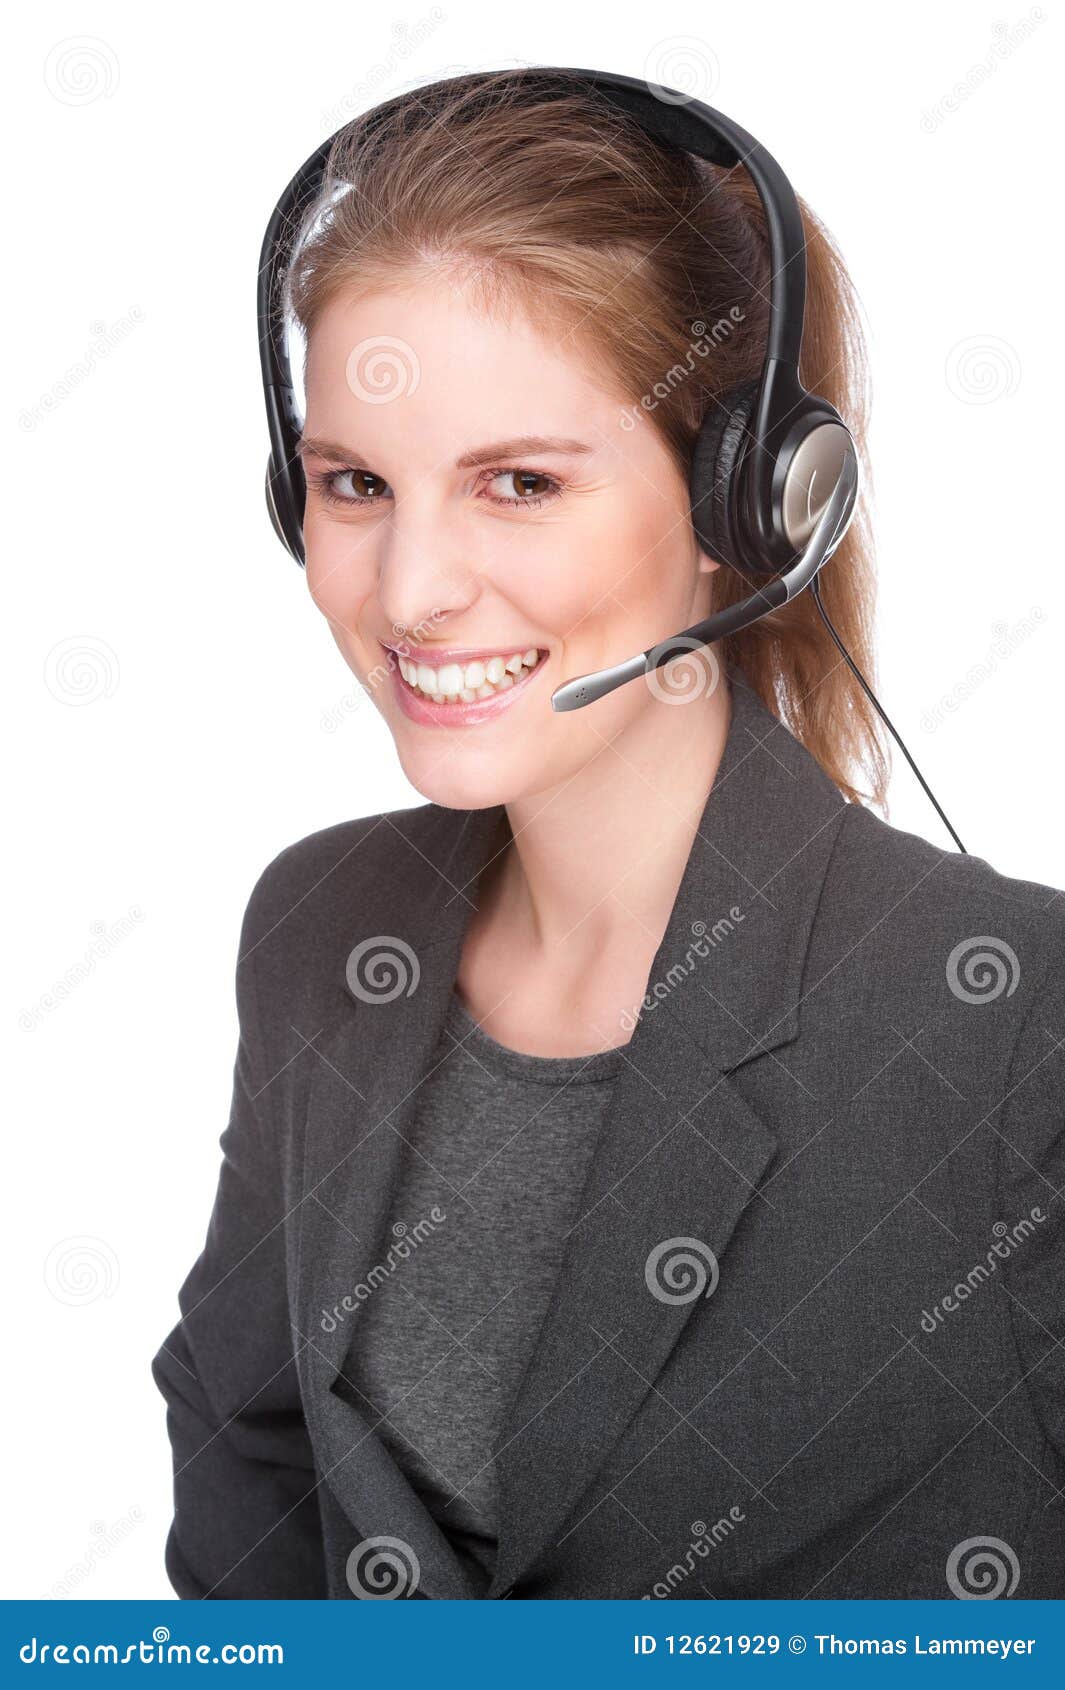 female callcenter employee